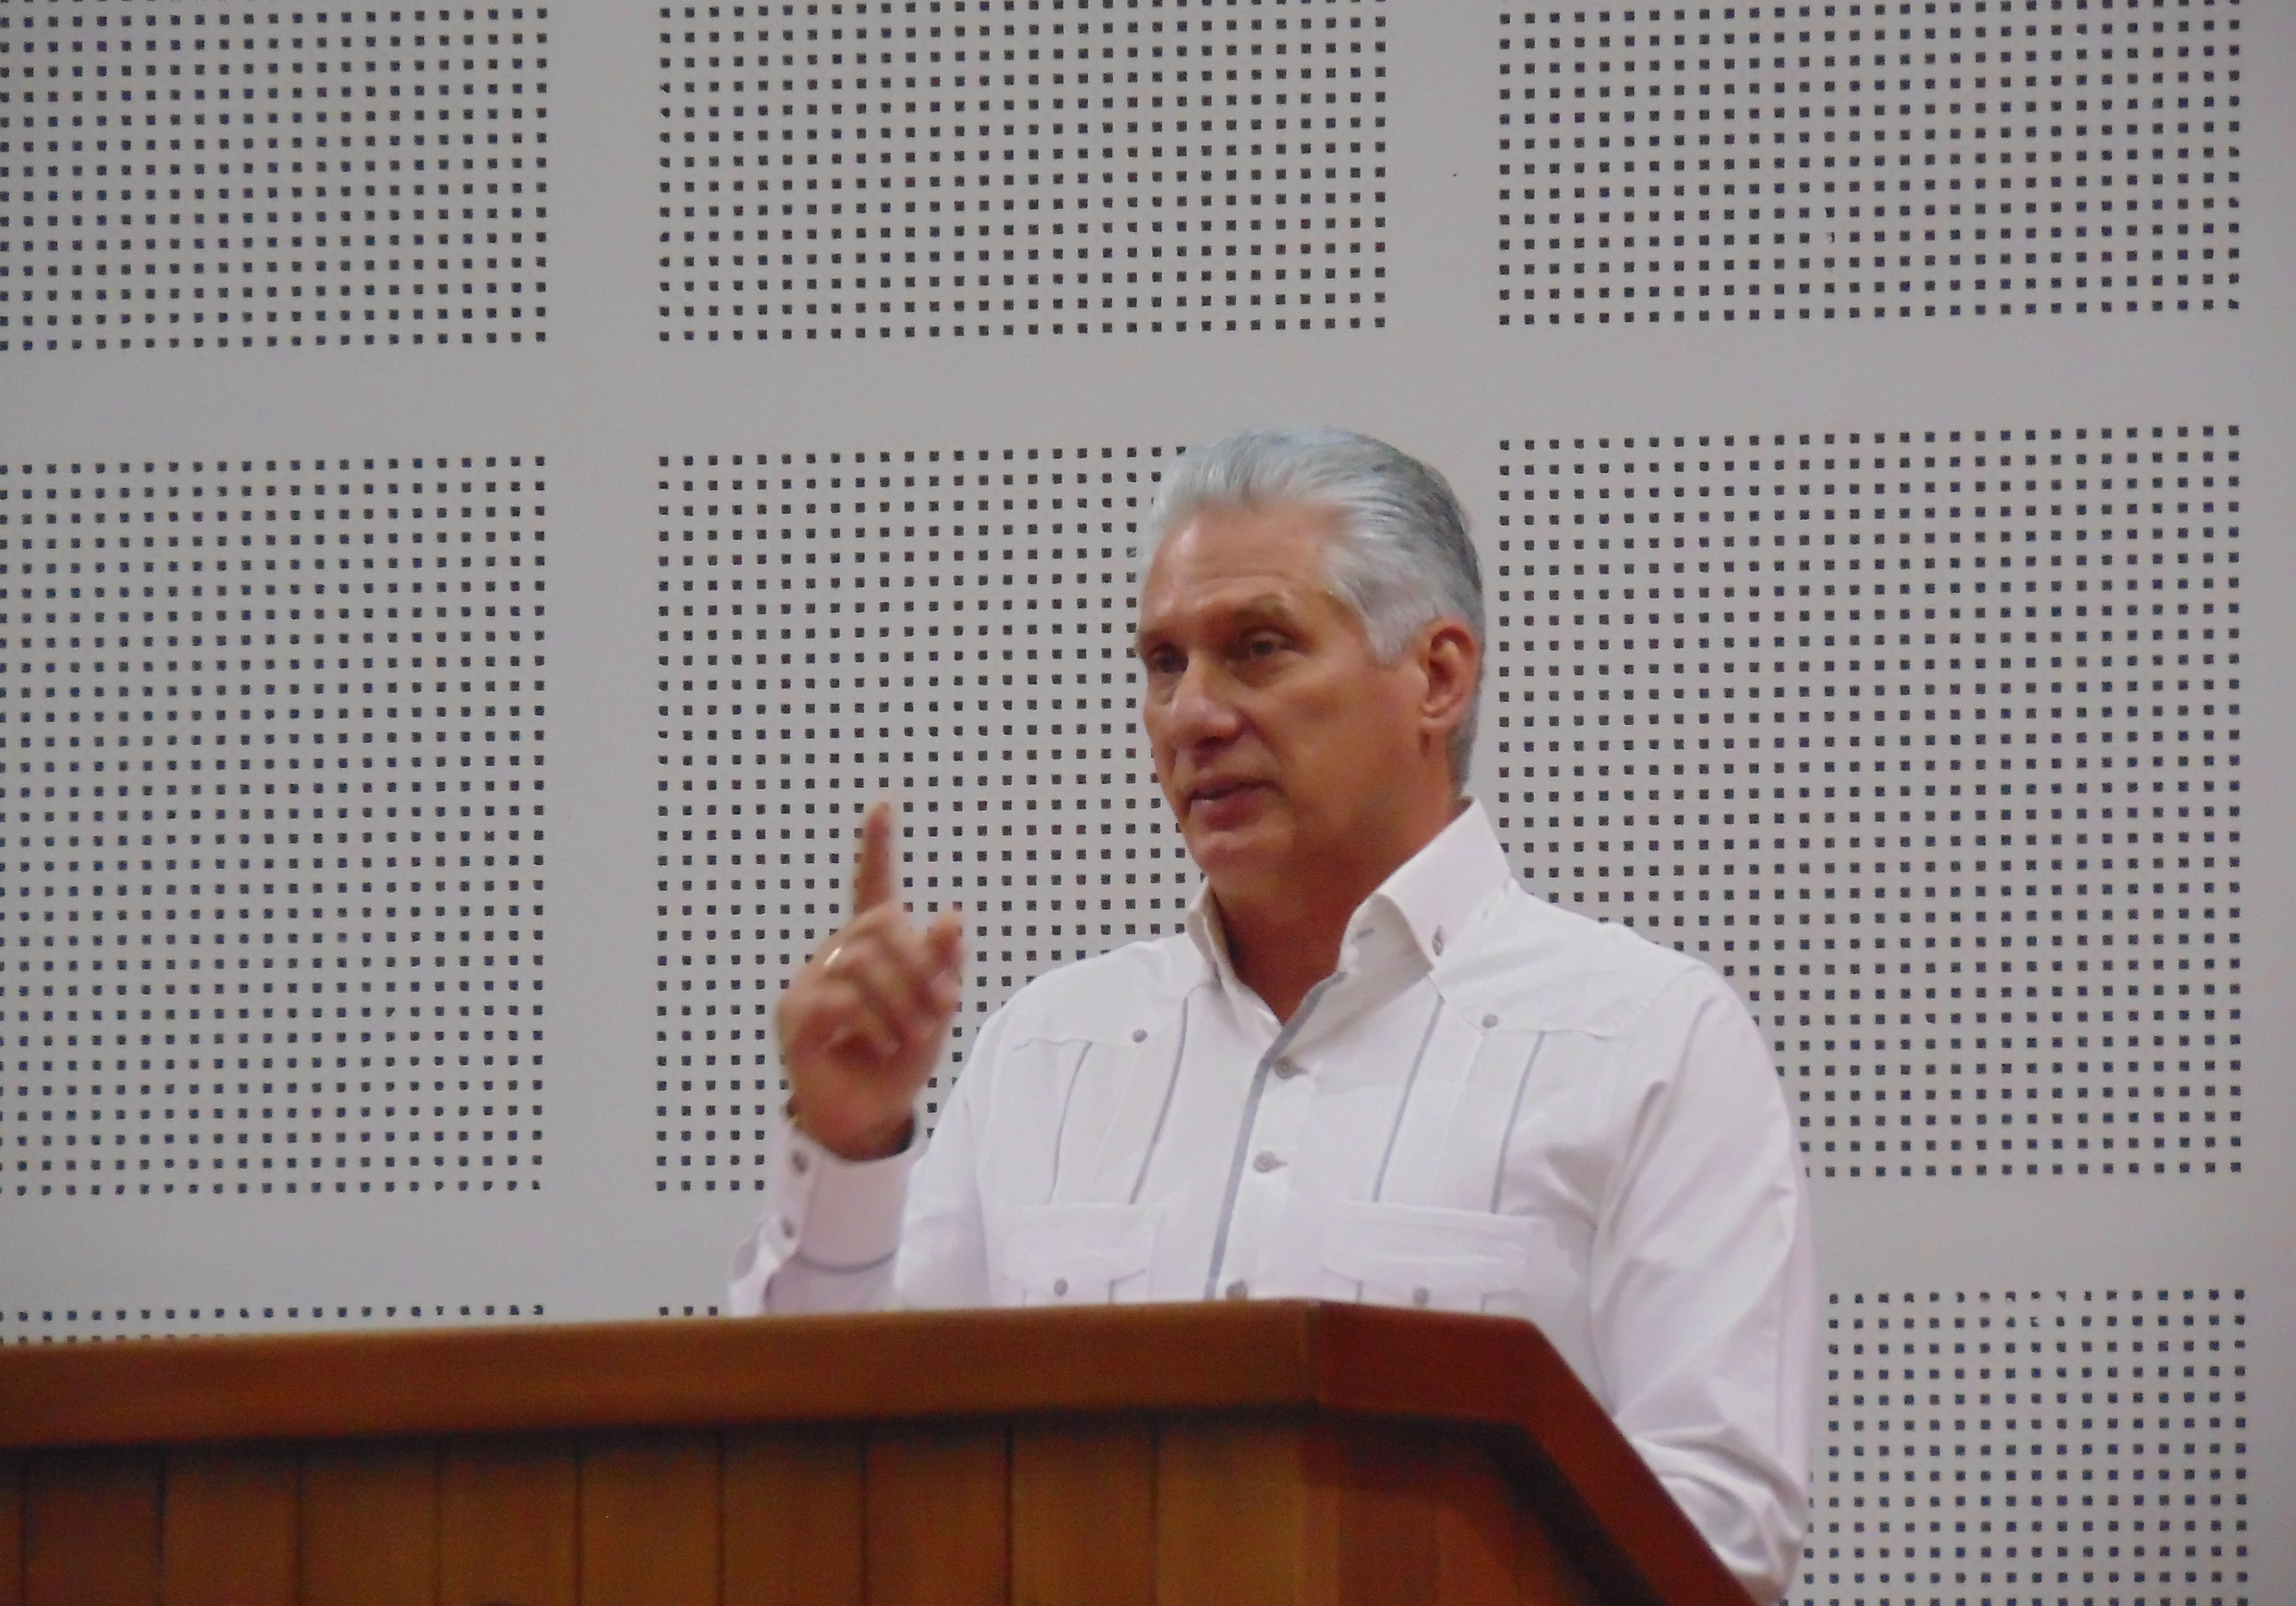  Miguel Díaz-Canel zum Abschluss des Internationalen Treffens der Solidarität mit Kuba und des Antiimperialismus.